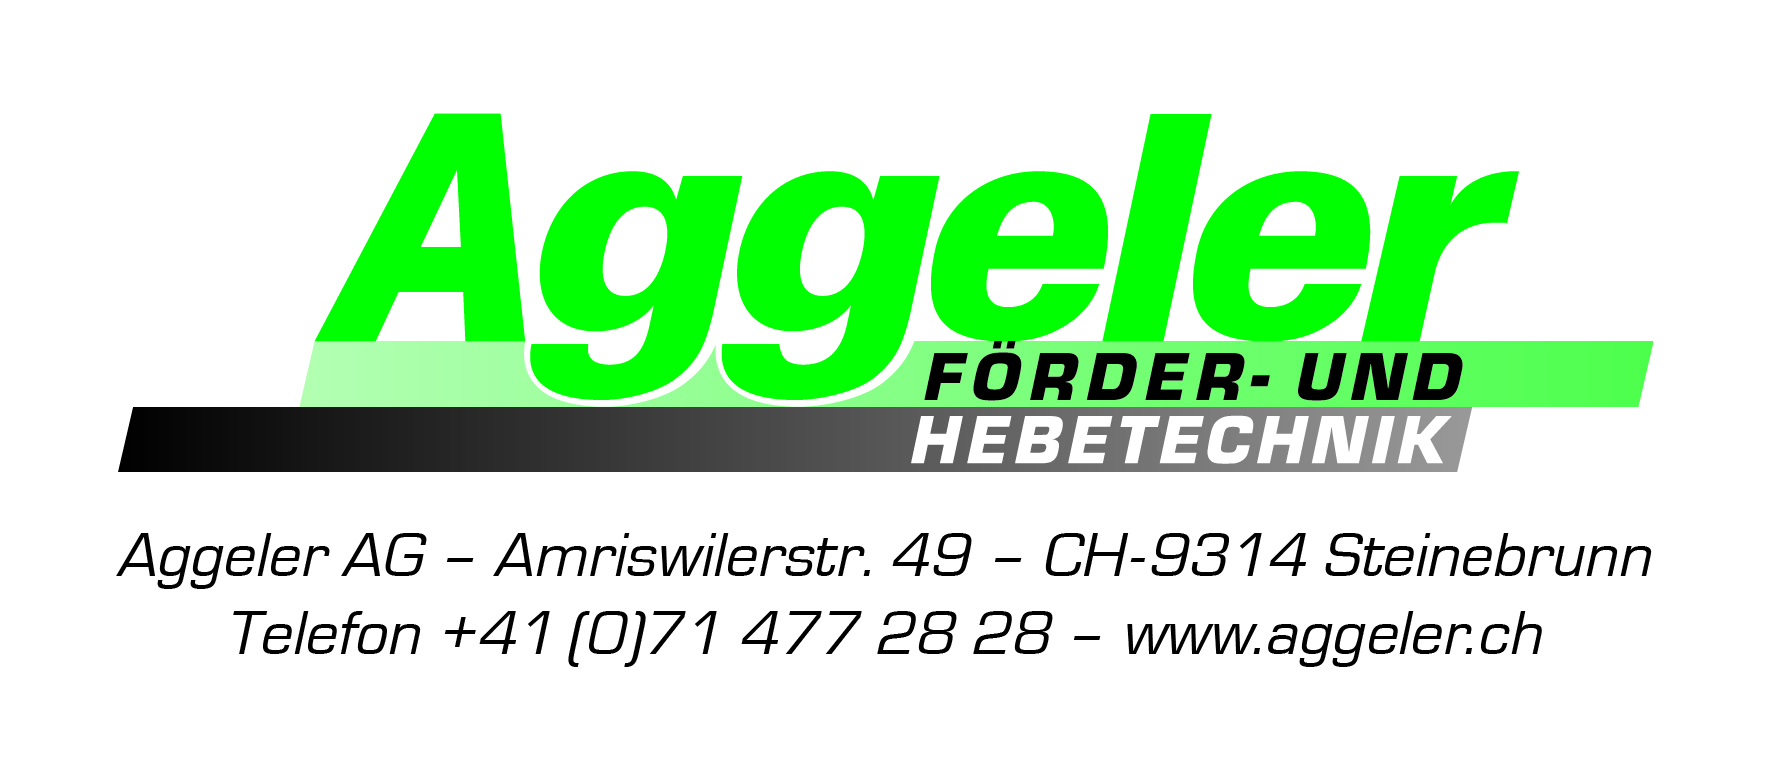 Aggeler AG Link